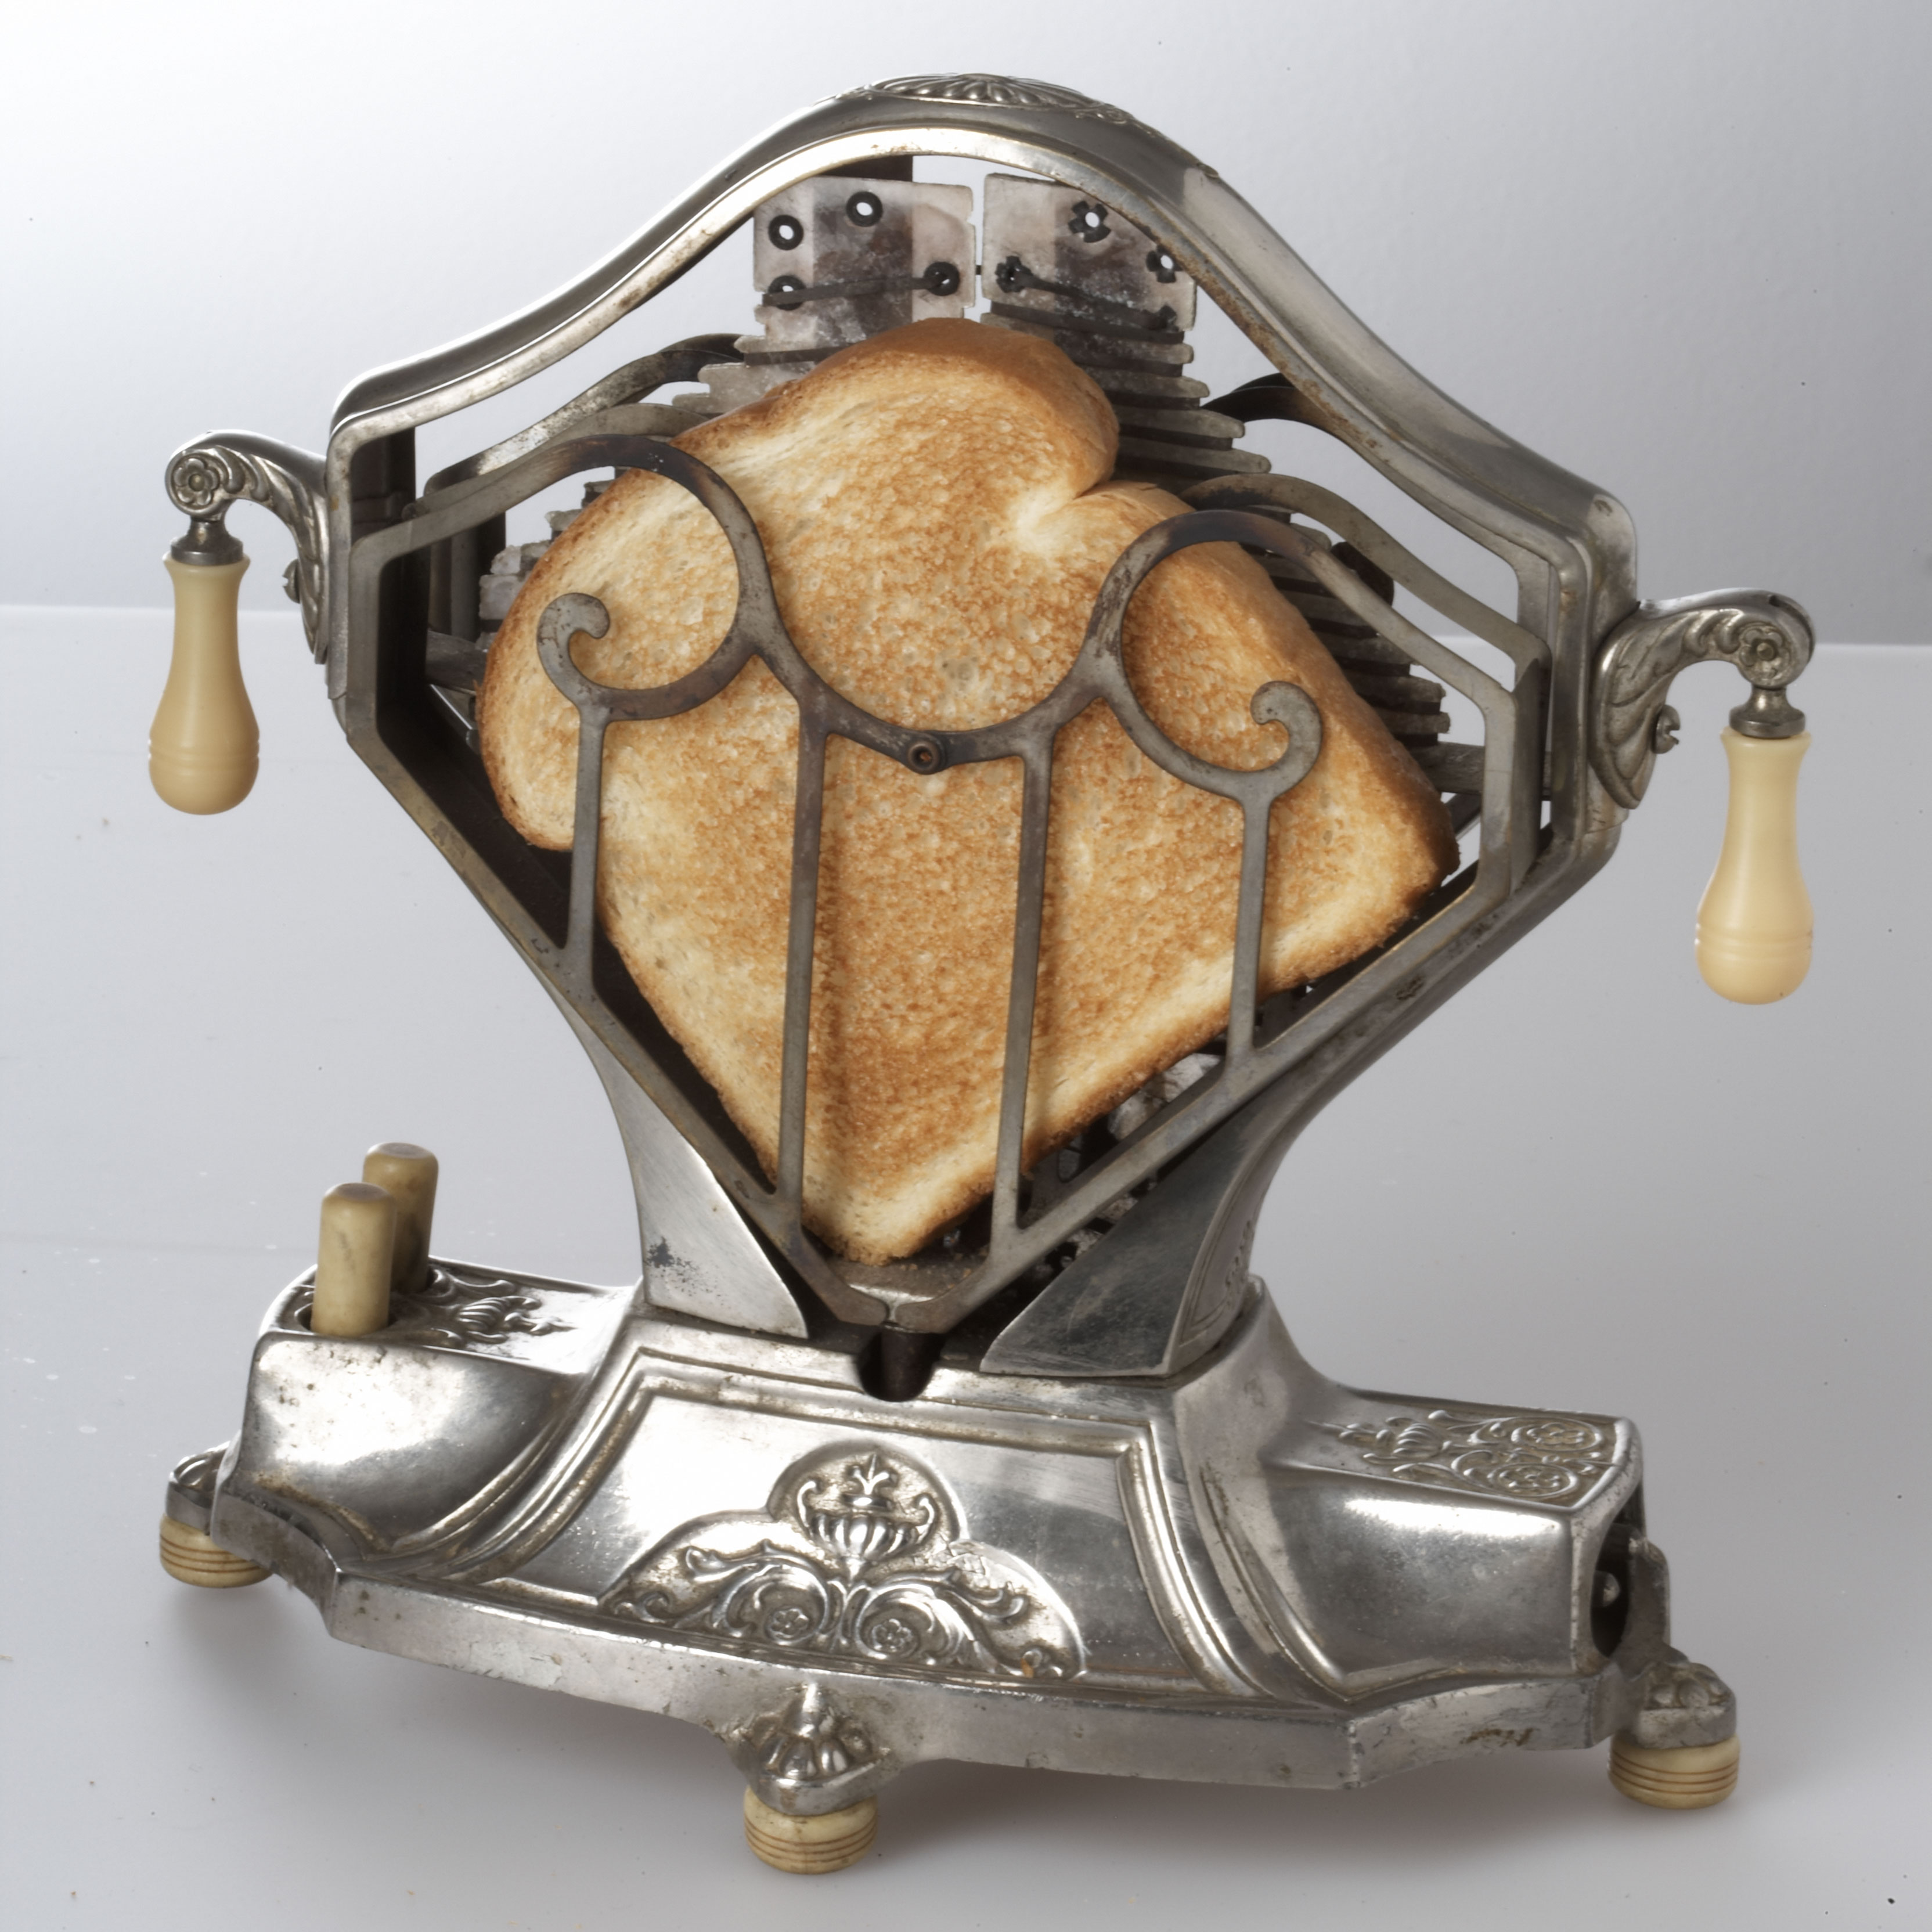 Un toaster électrique en 1920